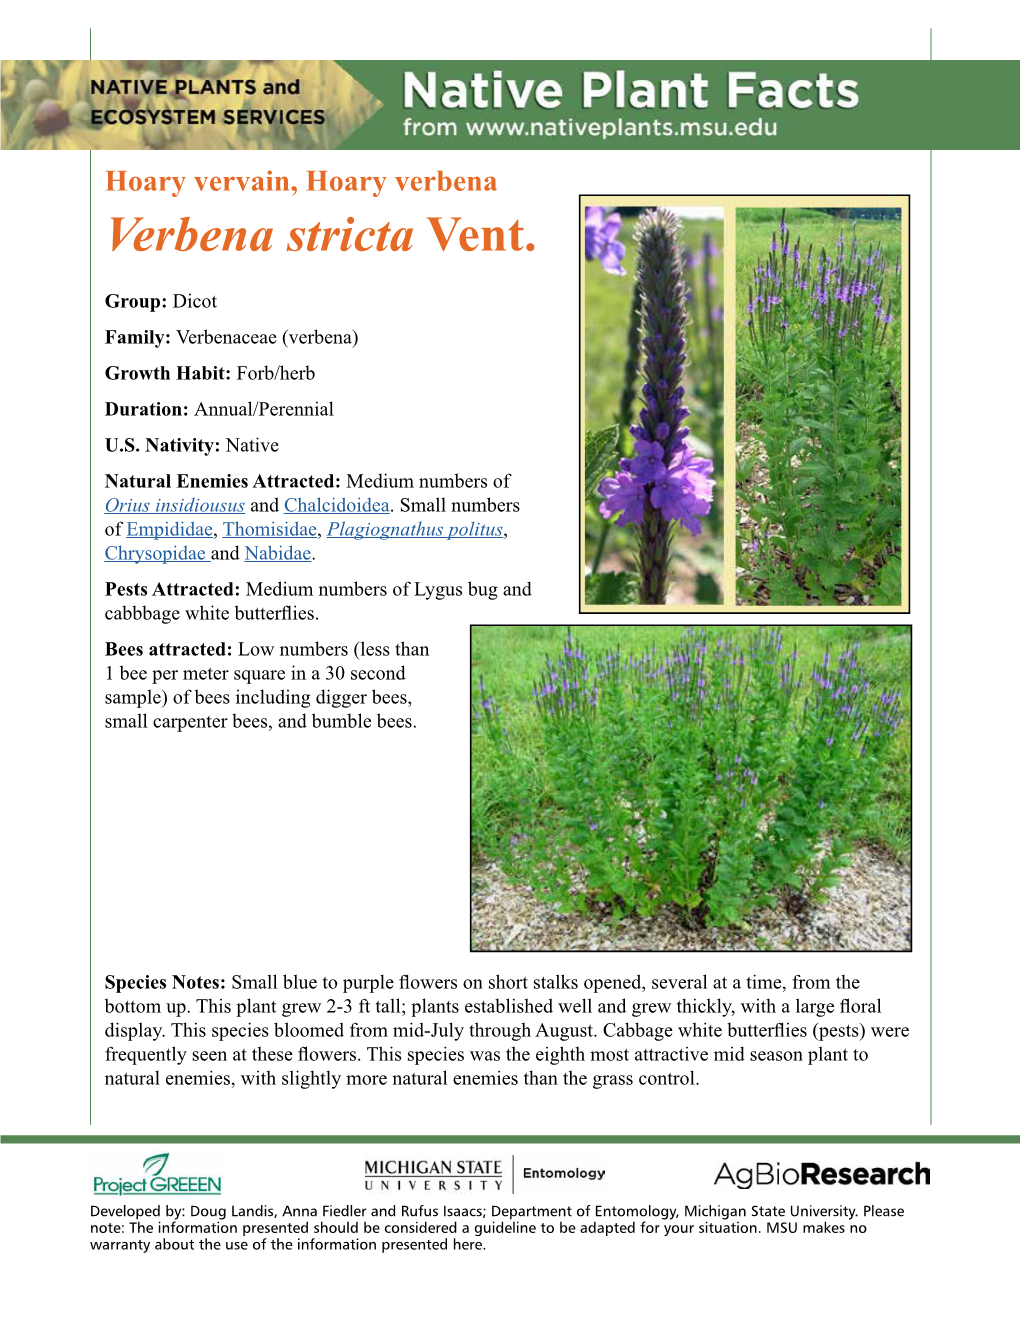 Native Plant Facts: Hoary Vervain, Hoary Verbena